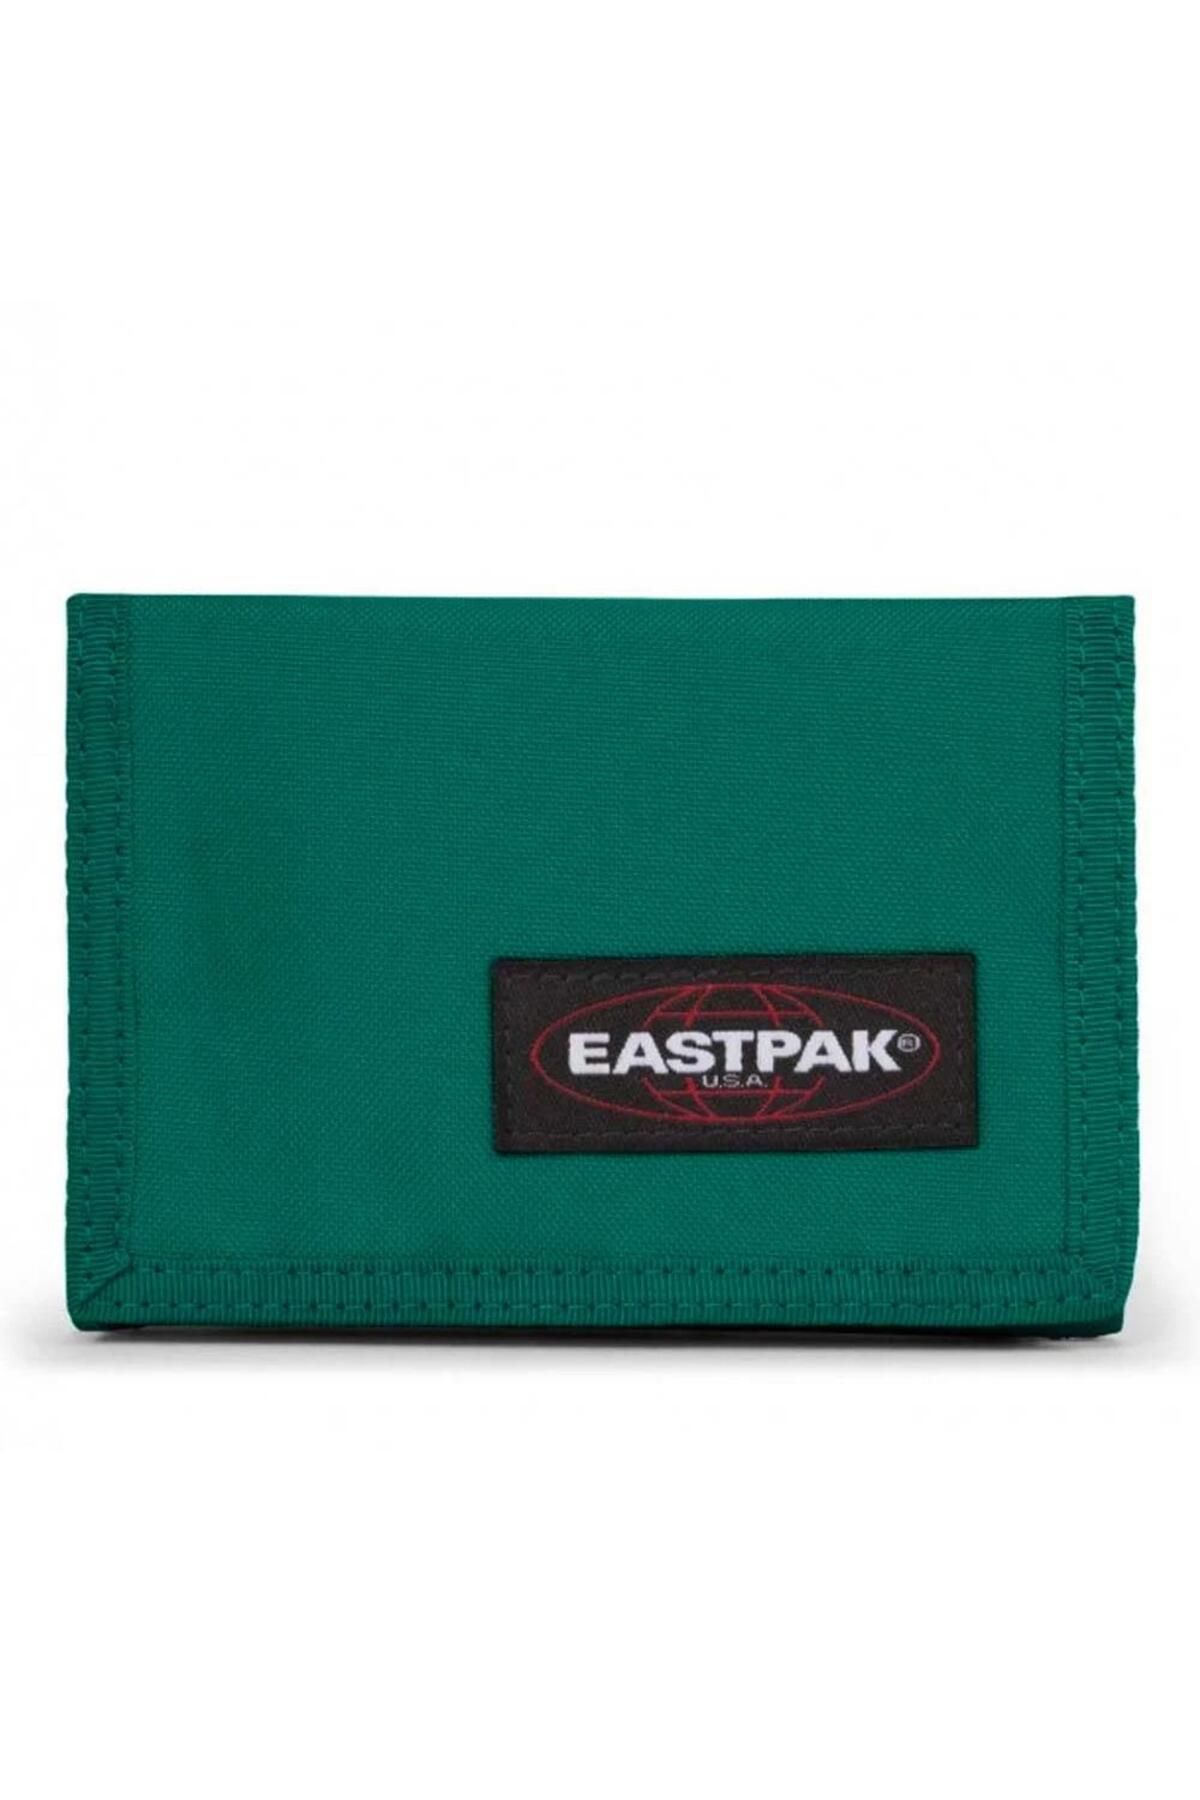 Eastpak Crew Single Yeşil Cüzdan